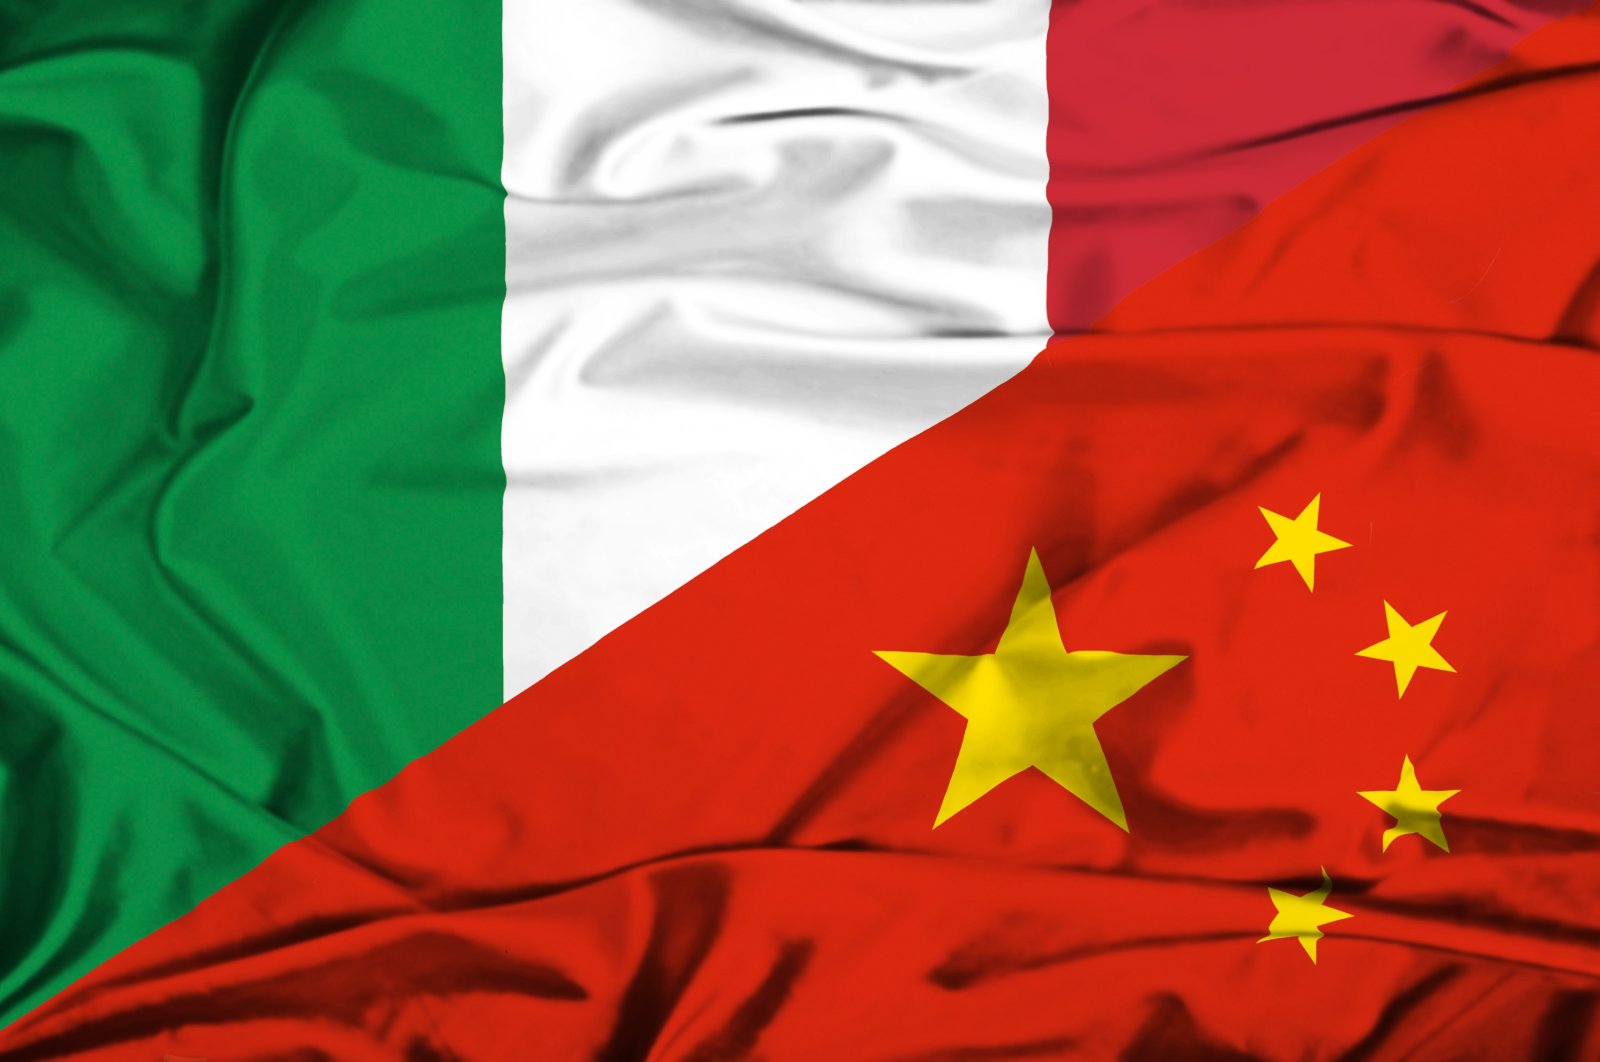 La Cina saluta la “fruttuosa” cooperazione con l’Italia nell’ambito della Belt and Road Initiative nonostante lo scetticismo di Roma